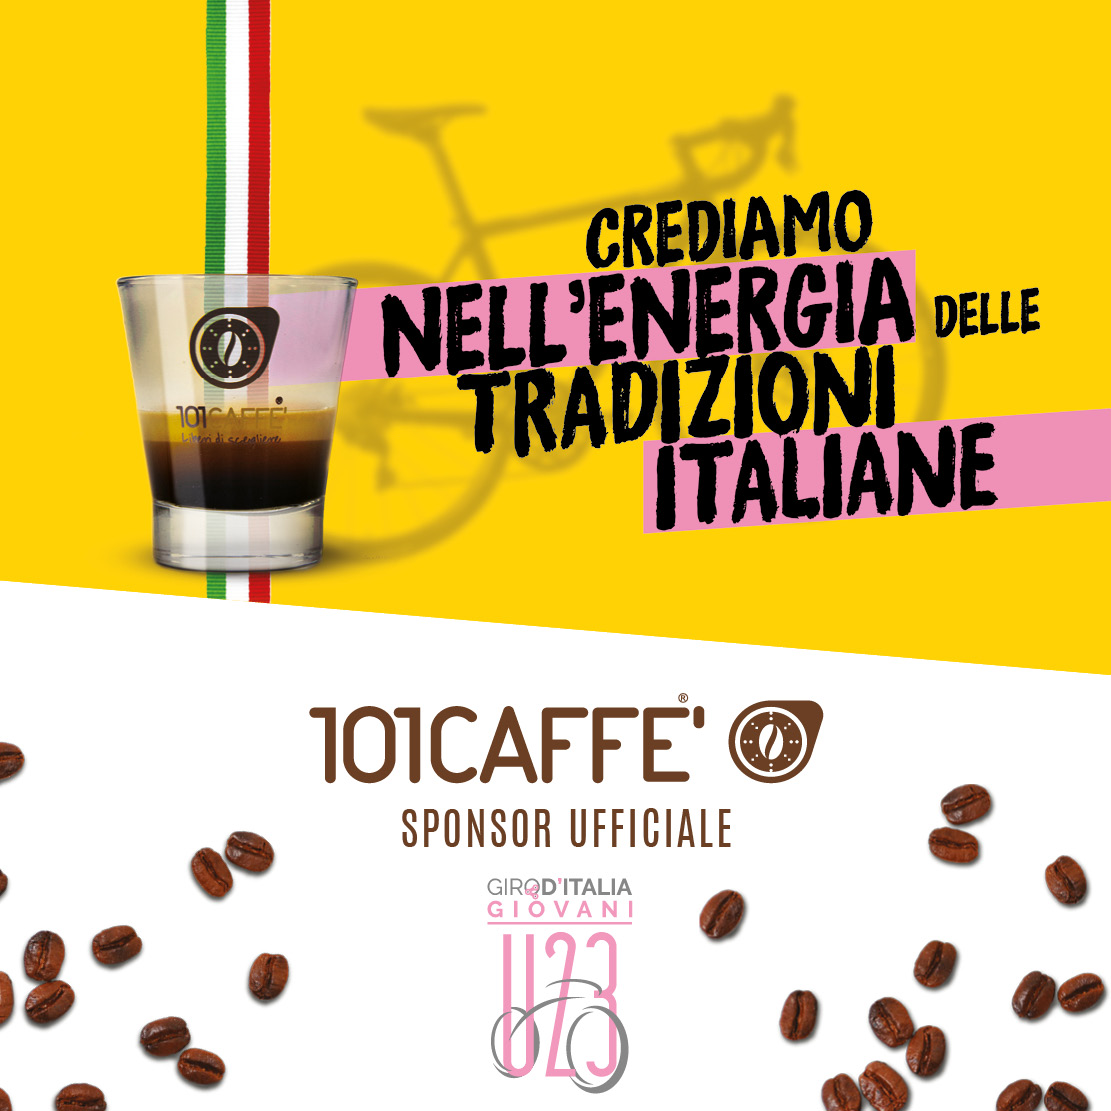 Giro d’Italia Under 101CAFFE' al GiroU23 Giro d'Italia Under La locandina della sponsorizzazione ufficiale di 101Caffè al Giro d'Italia Under 23